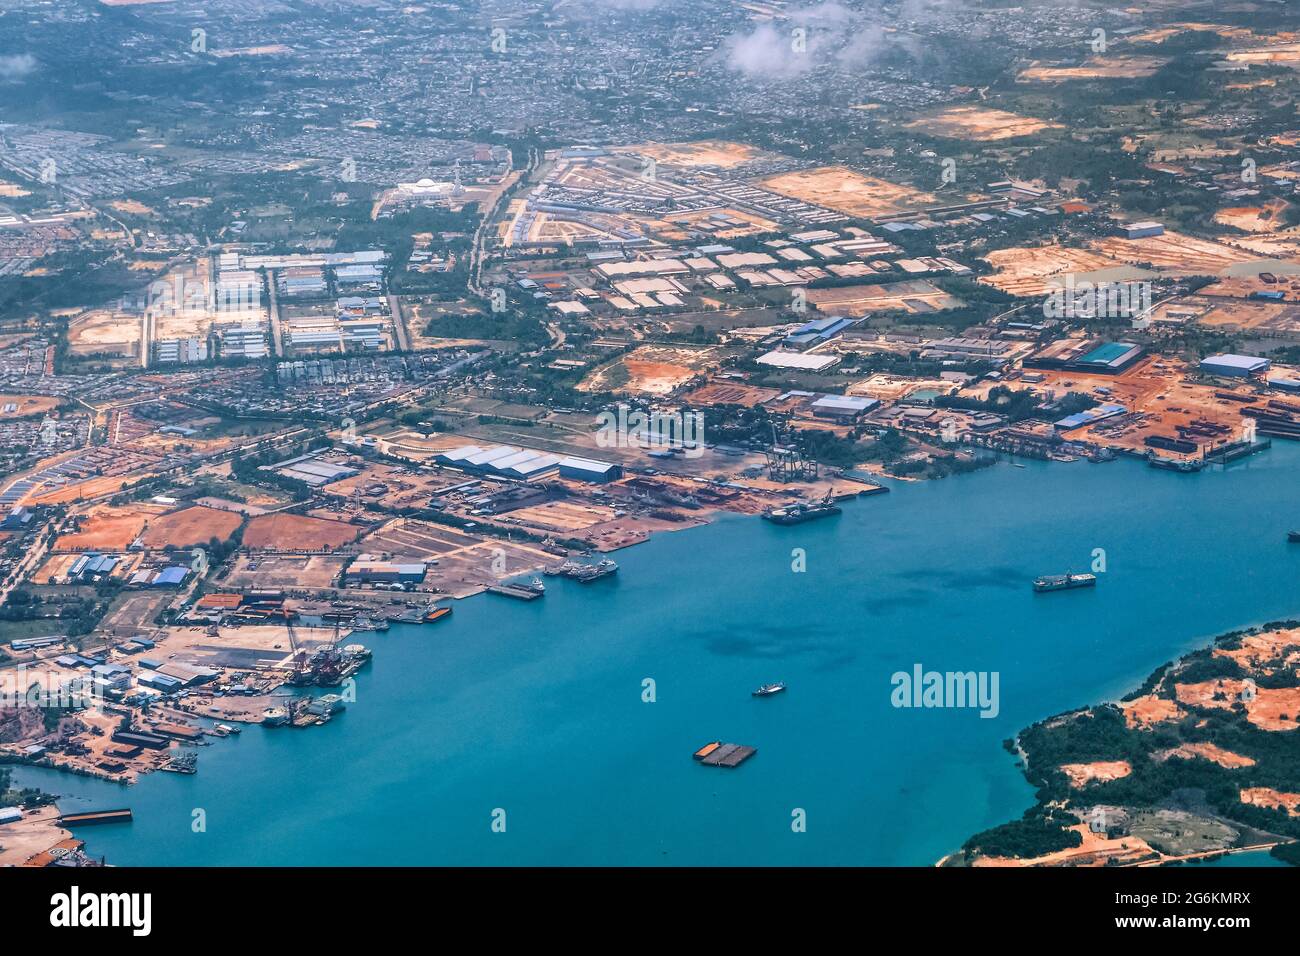 Vue aérienne de la construction côtière ou des zones portuaires dans le détroit de Malacca, sur la route aérienne vers la Malaisie ou Singapour. Prise de vue en avion Banque D'Images